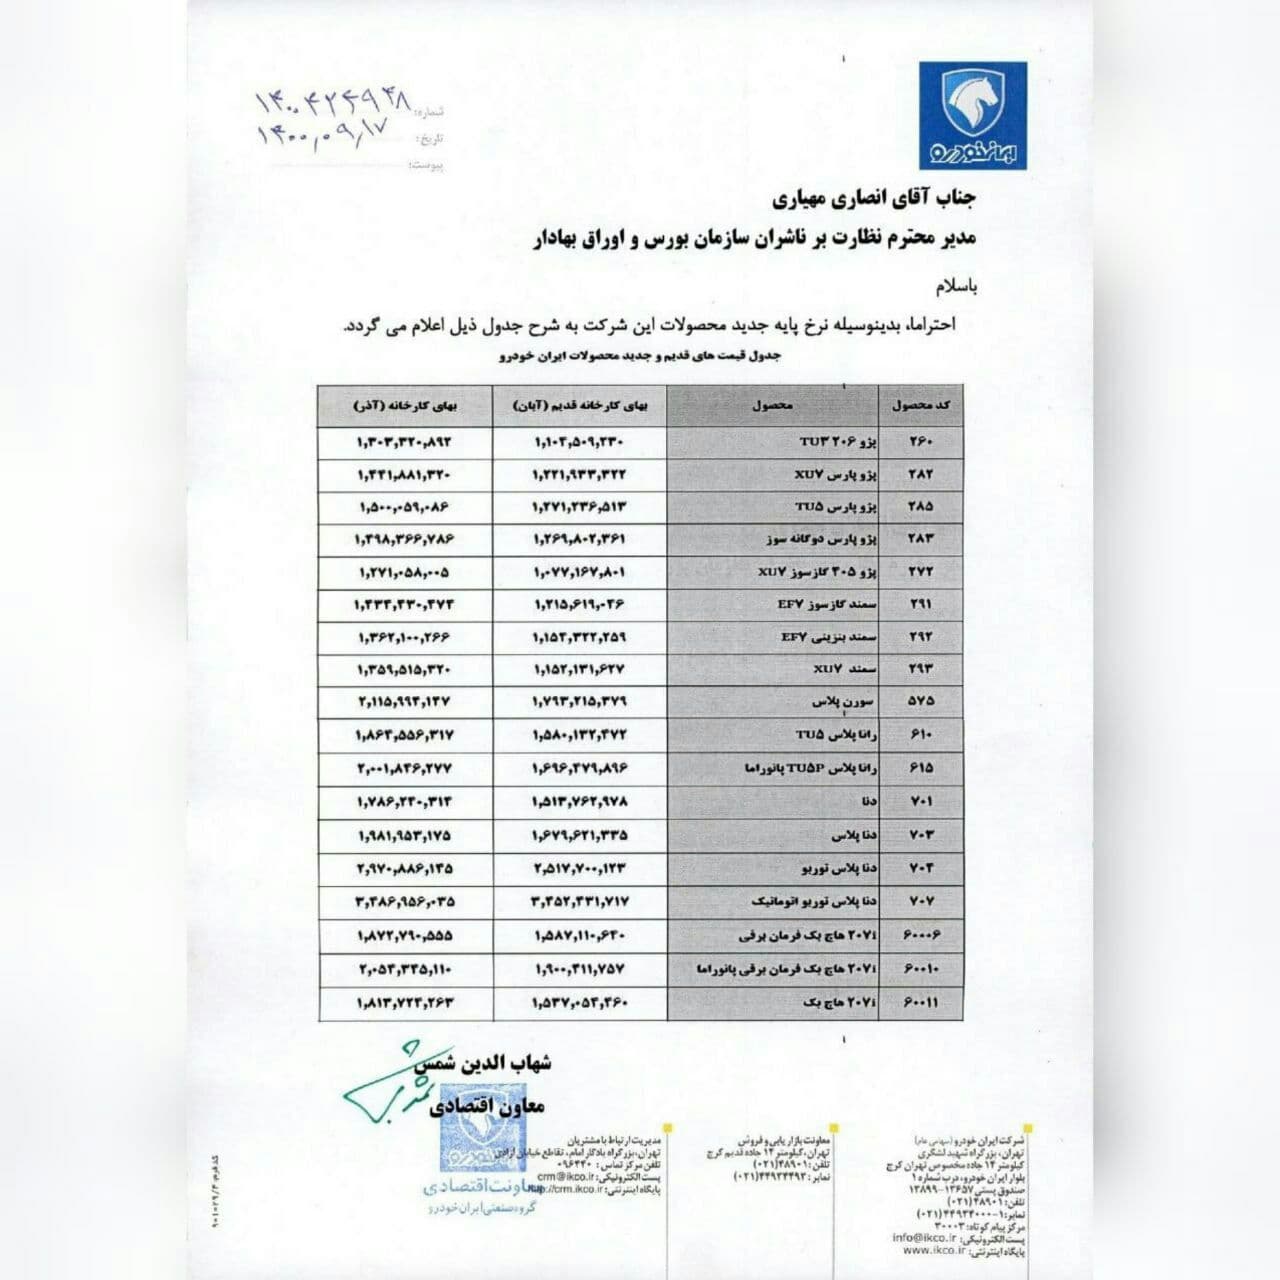 قیمت جدید محصولات ایران خودرو - آذر ۱۴۰۰ اعلام شد